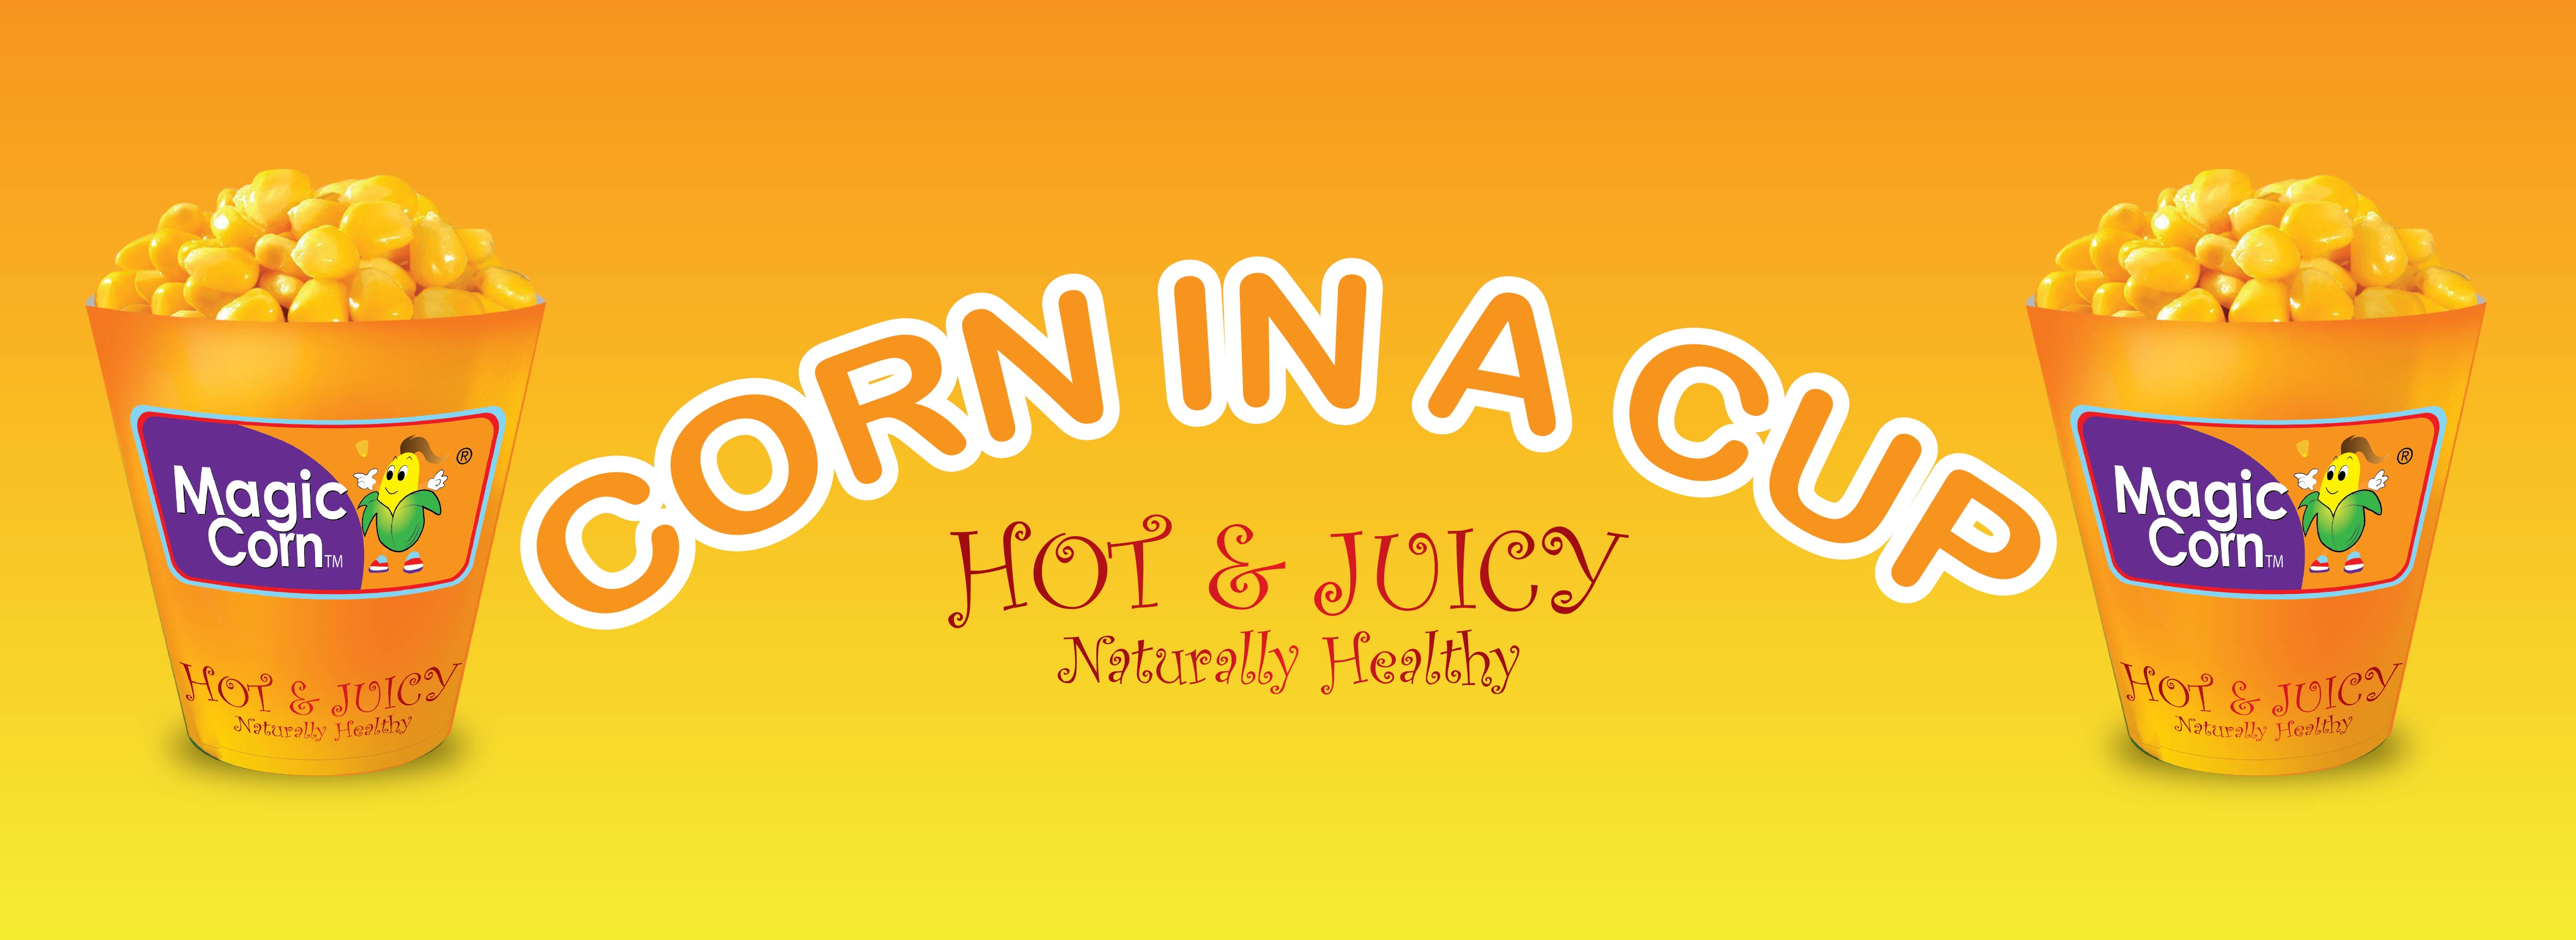 Hot & Juicy Magic Corn